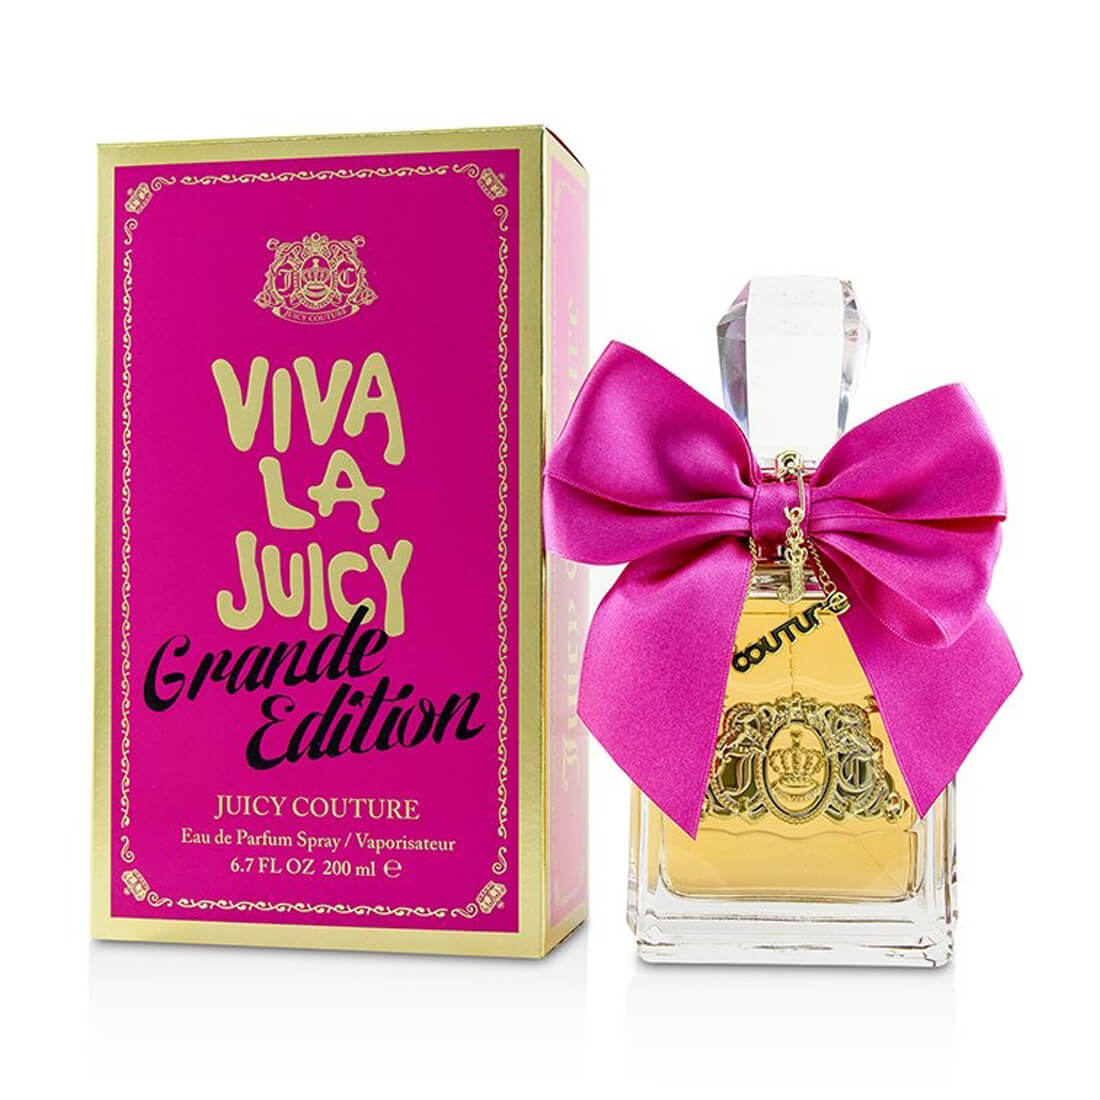 Juicy Couture Viva La Juicy Grande Edition Eau De Perfume For Women 200ml